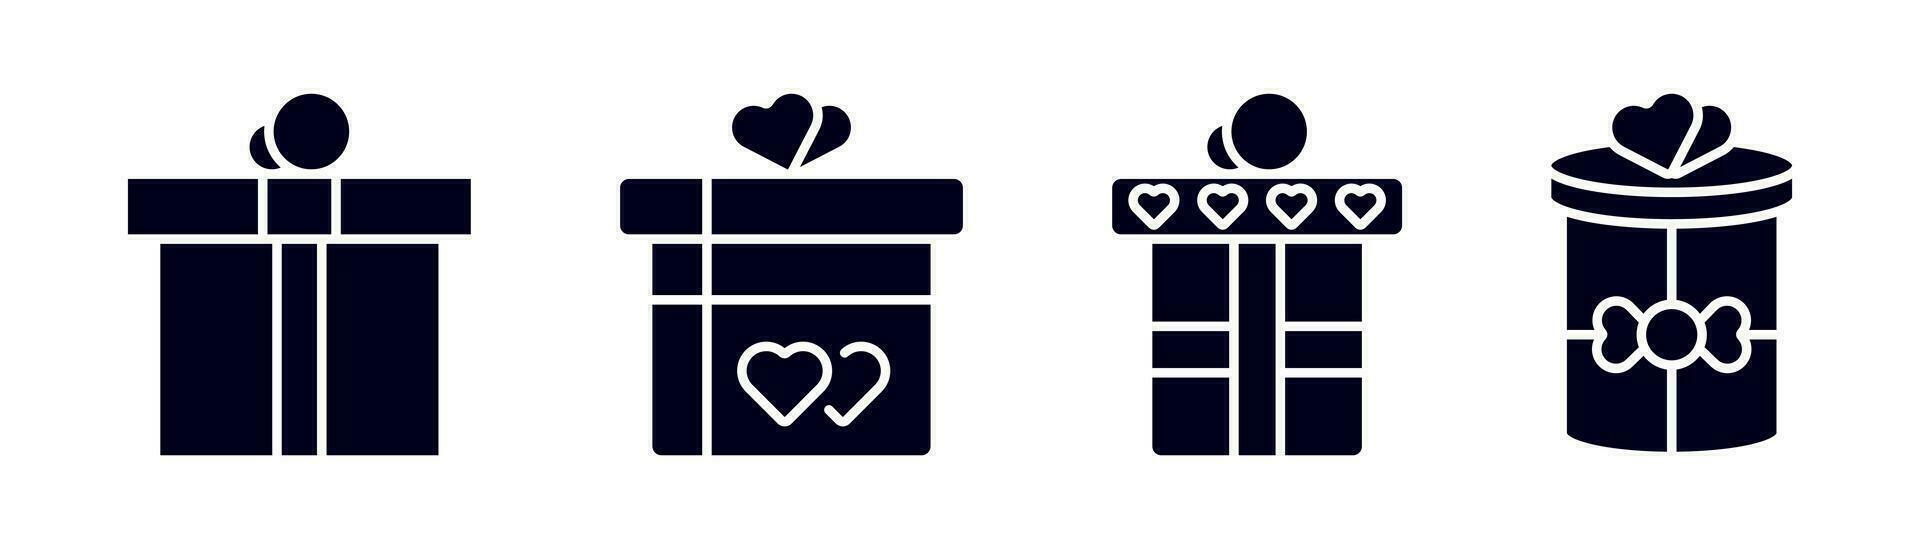 gåva låda ikon uppsättning. närvarande låda i glyph. gåva paket i glyph. närvarande symbol med hjärta form. valentines dag gåva. stock vektor illustration.